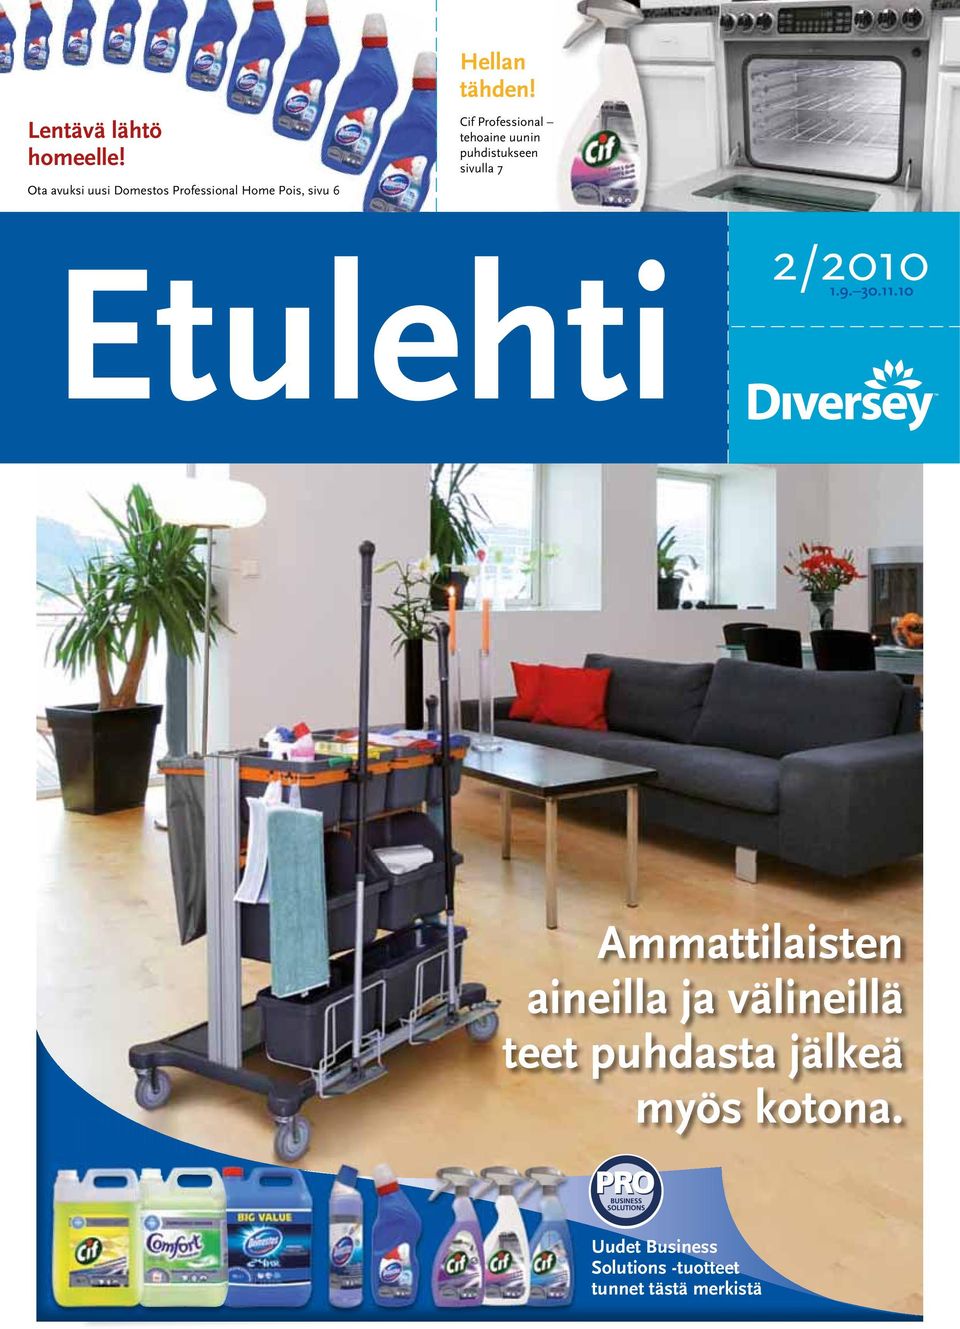 Cif Professional tehoaine uunin puhdistukseen sivulla 7 Etulehti 2/2010 1.9.